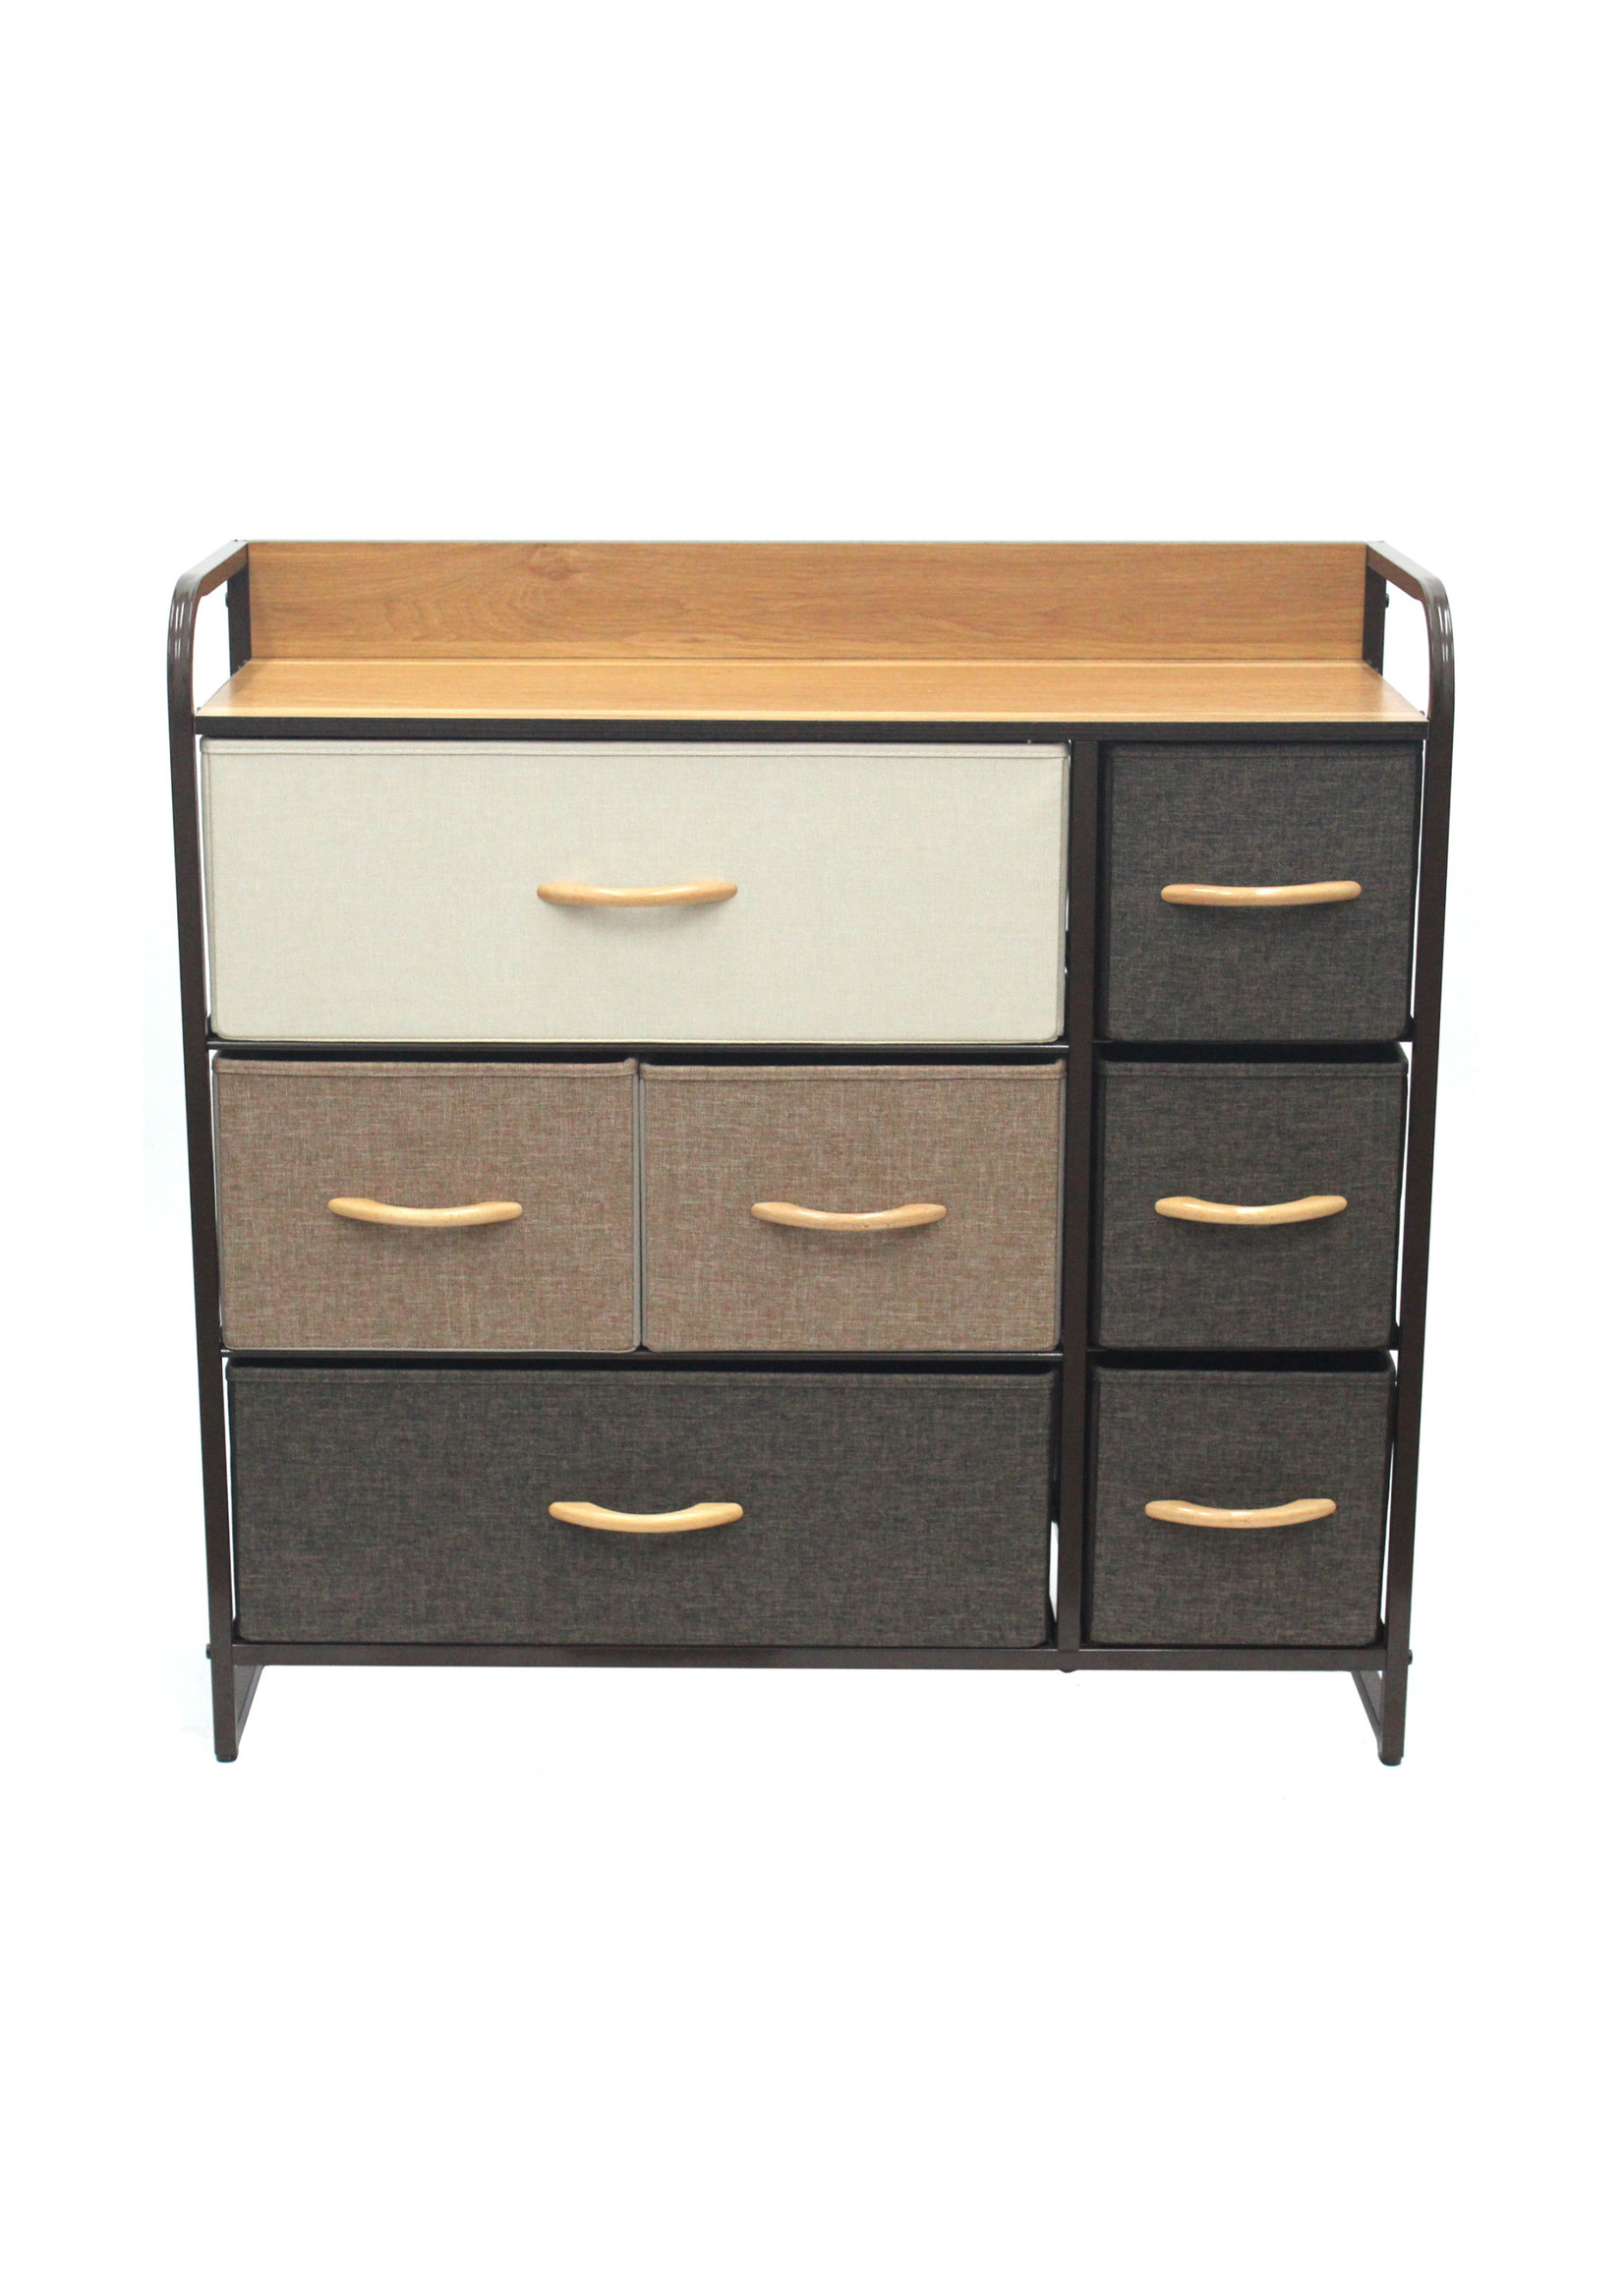 Nola Home Dresser Storage Organizer Fabric Drawers Closet Shelves for Bedroom